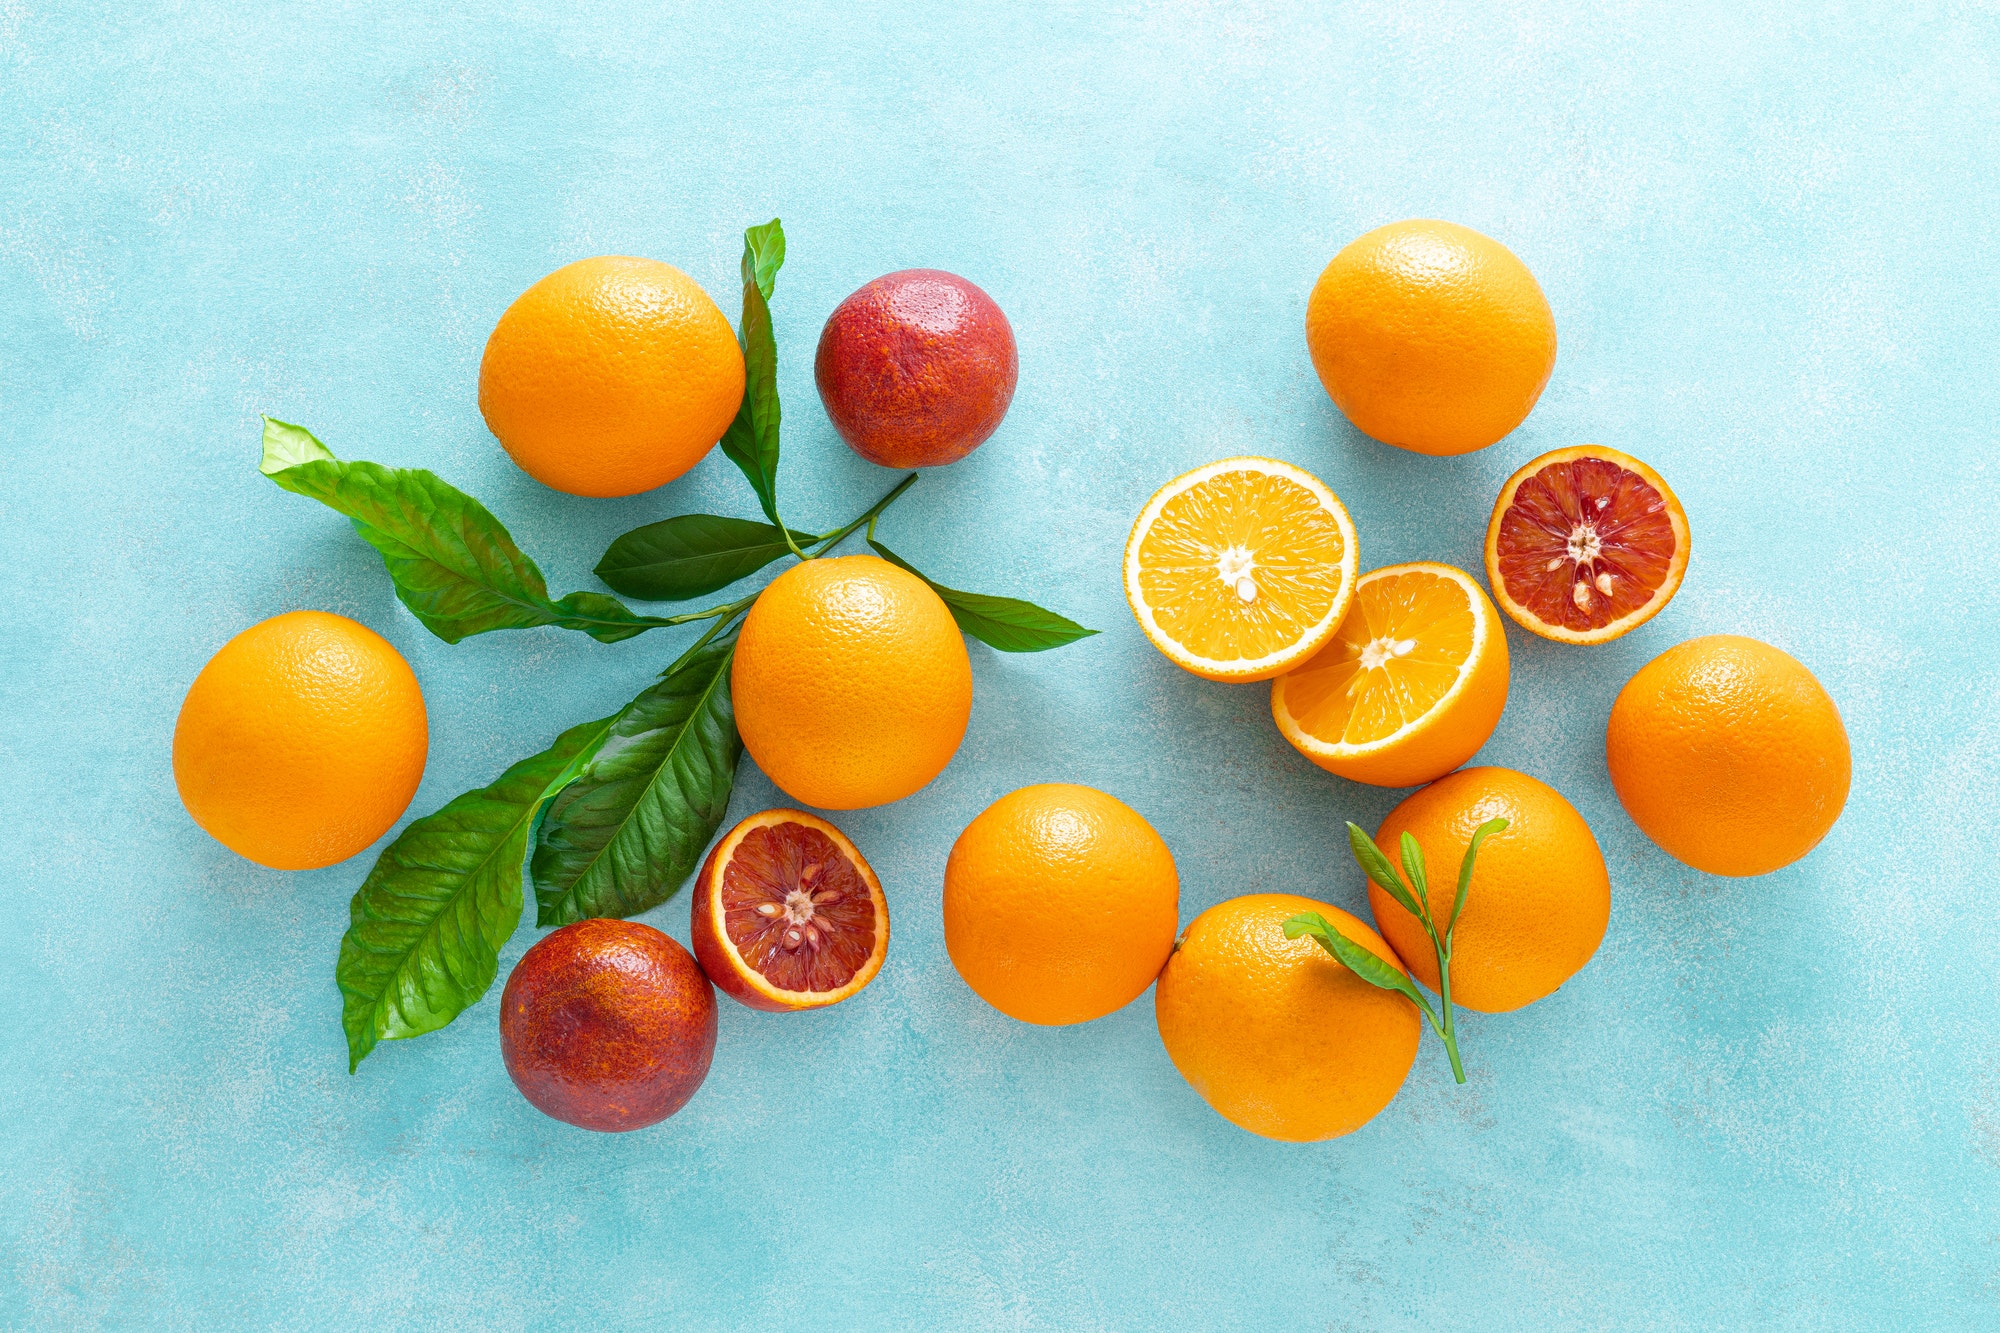 L'orange est un aliment riche en acide ascorbique bénéfique pour la santé